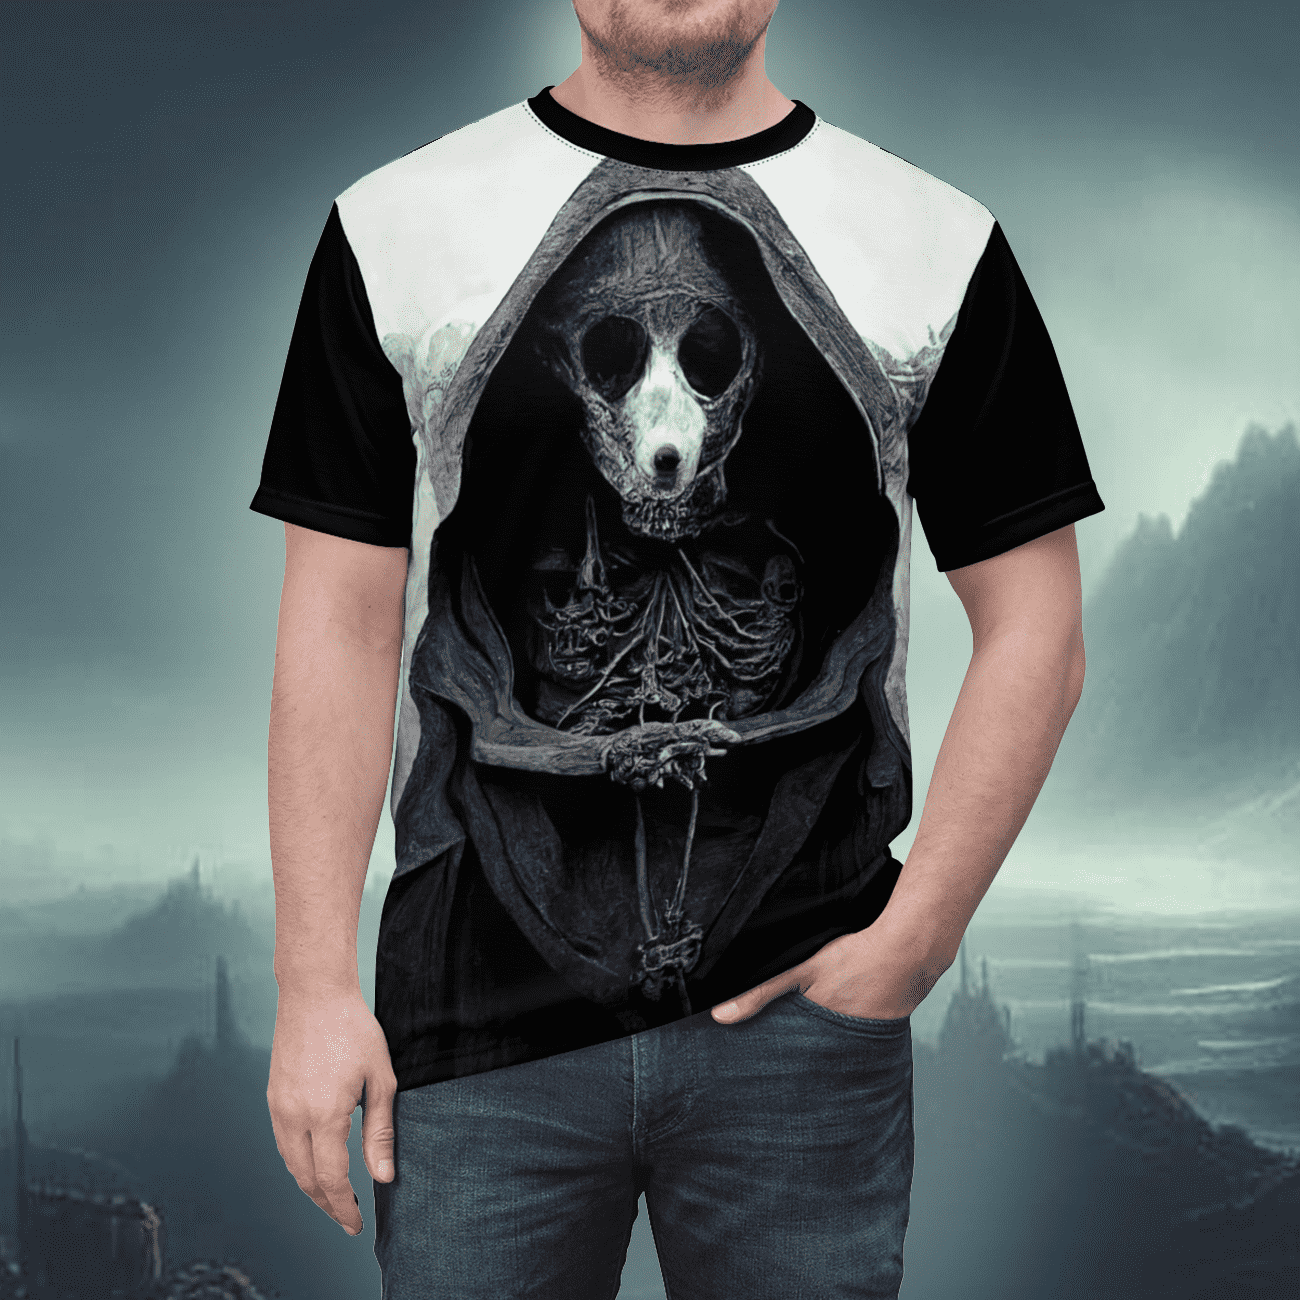 Gothic horror art t-shirt of an evil rat priest, monster.